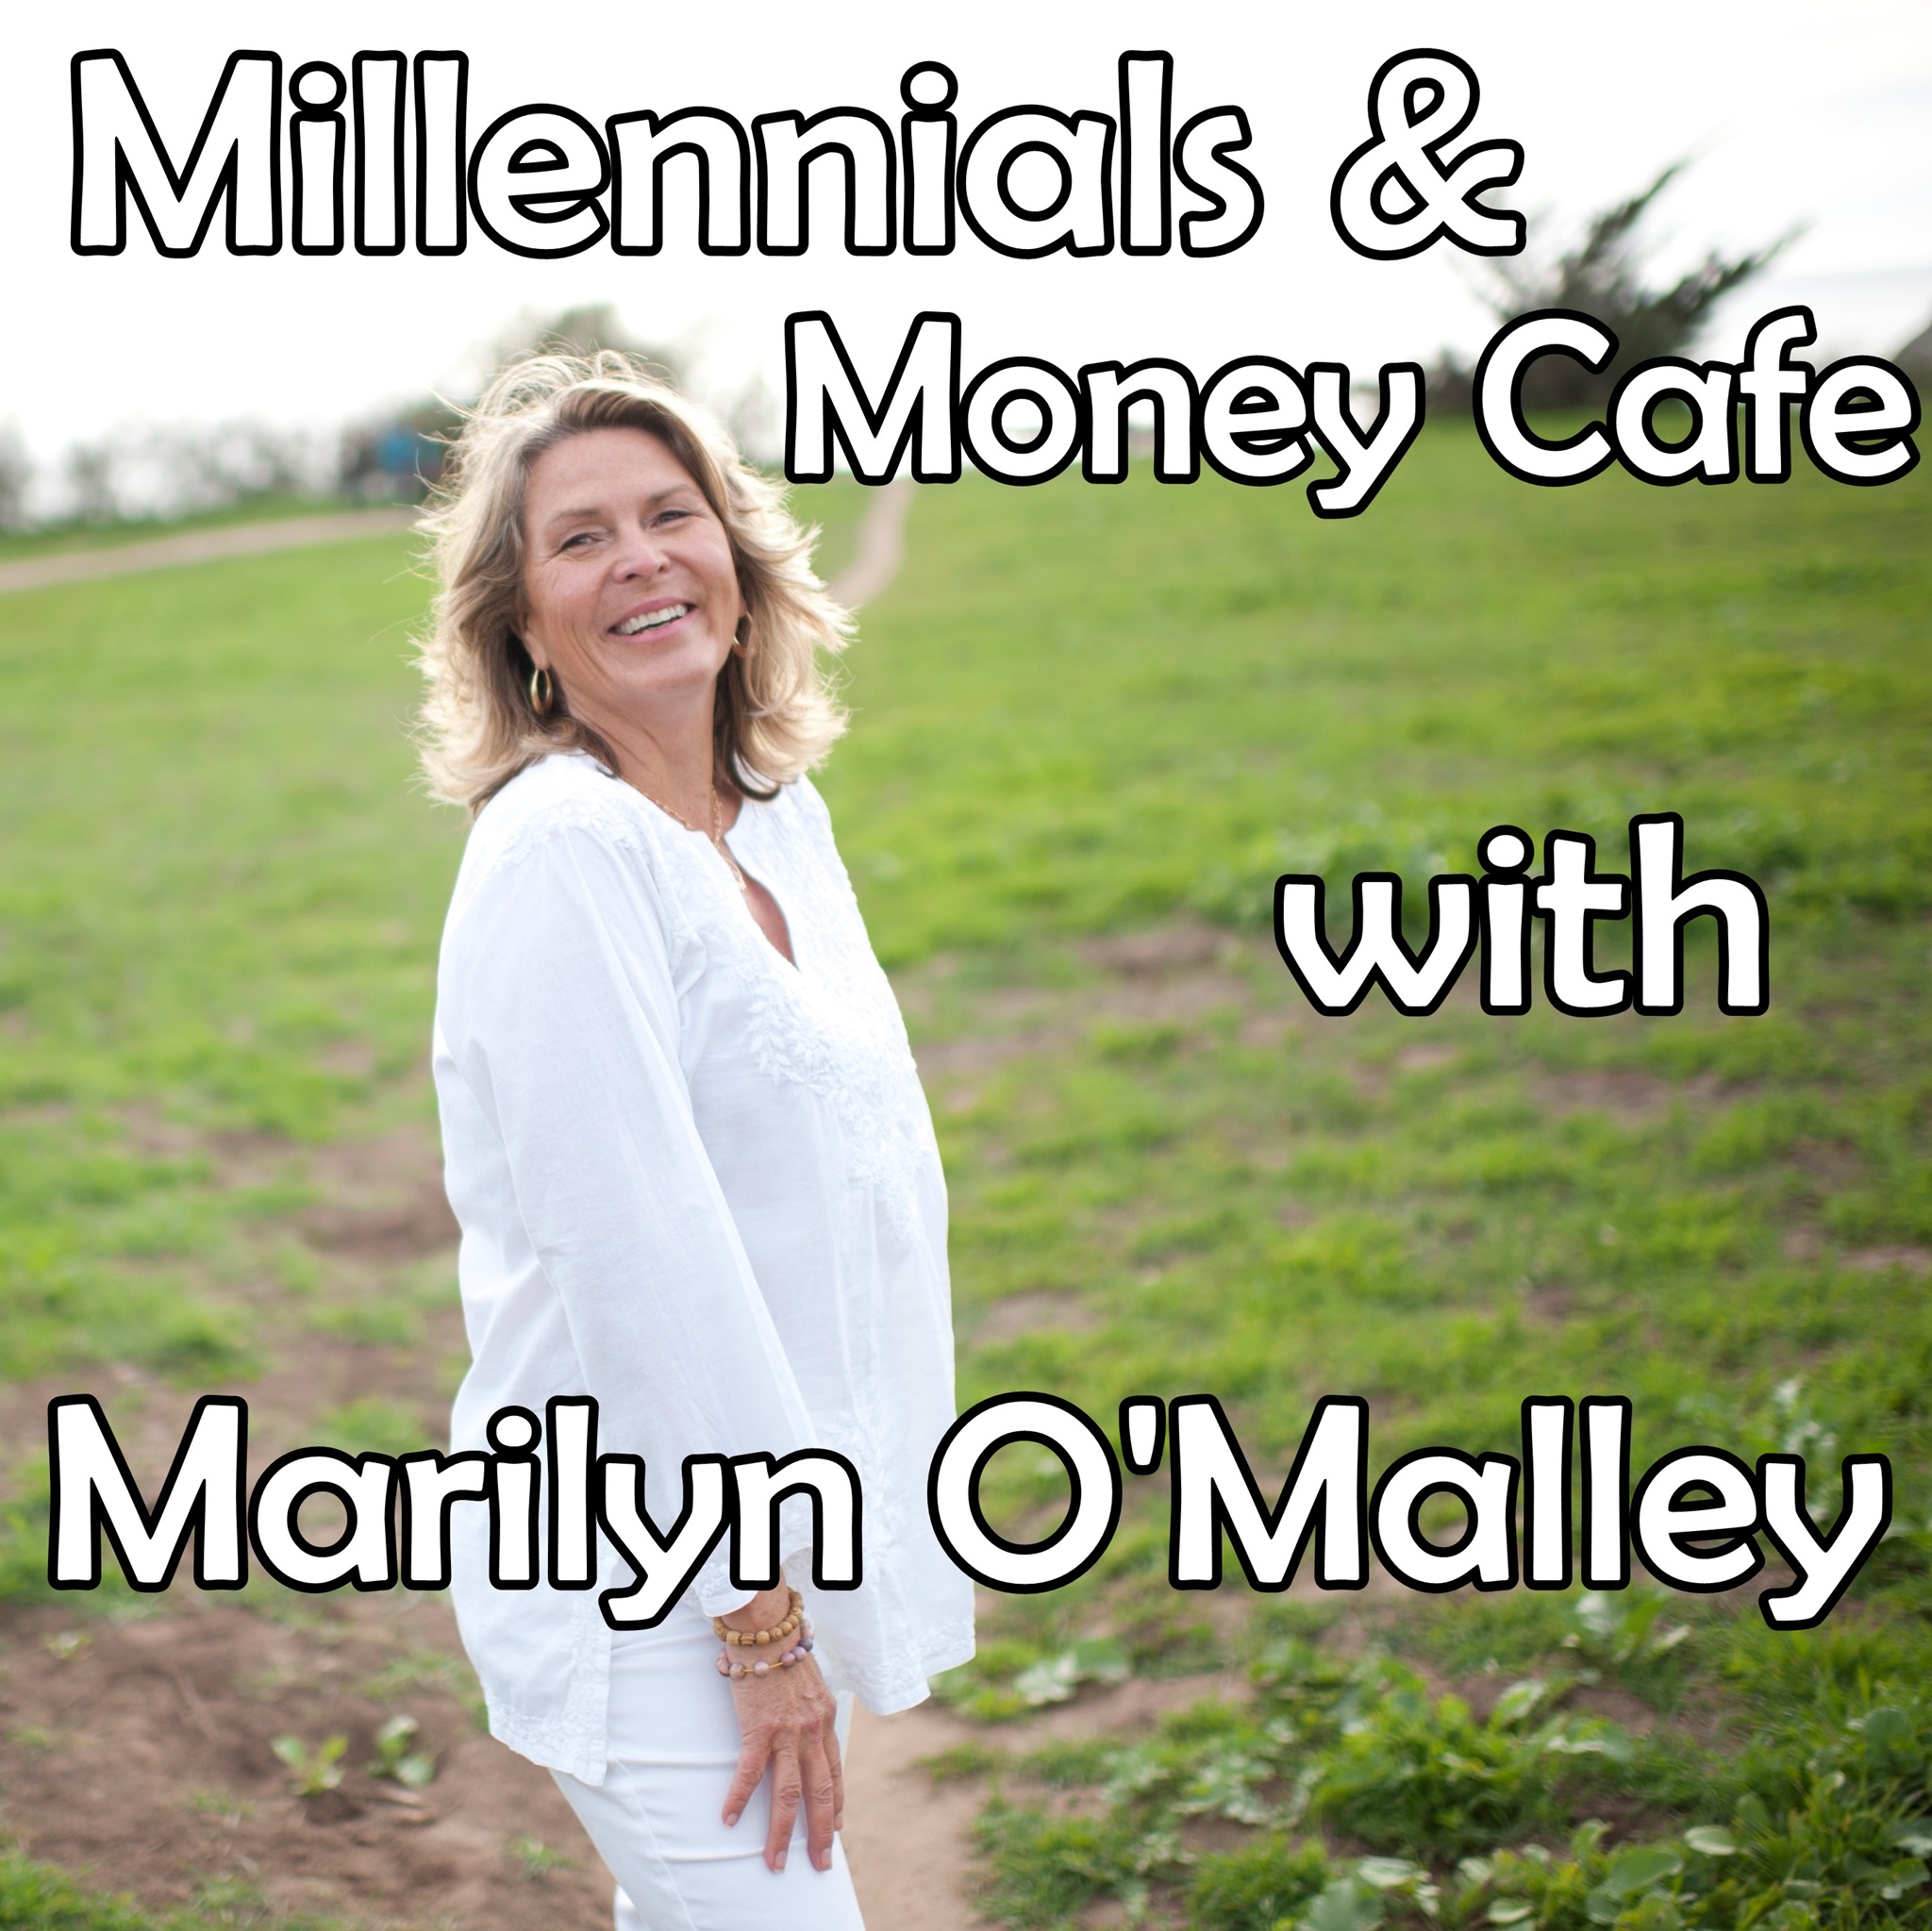 Millennials & Money Cafe